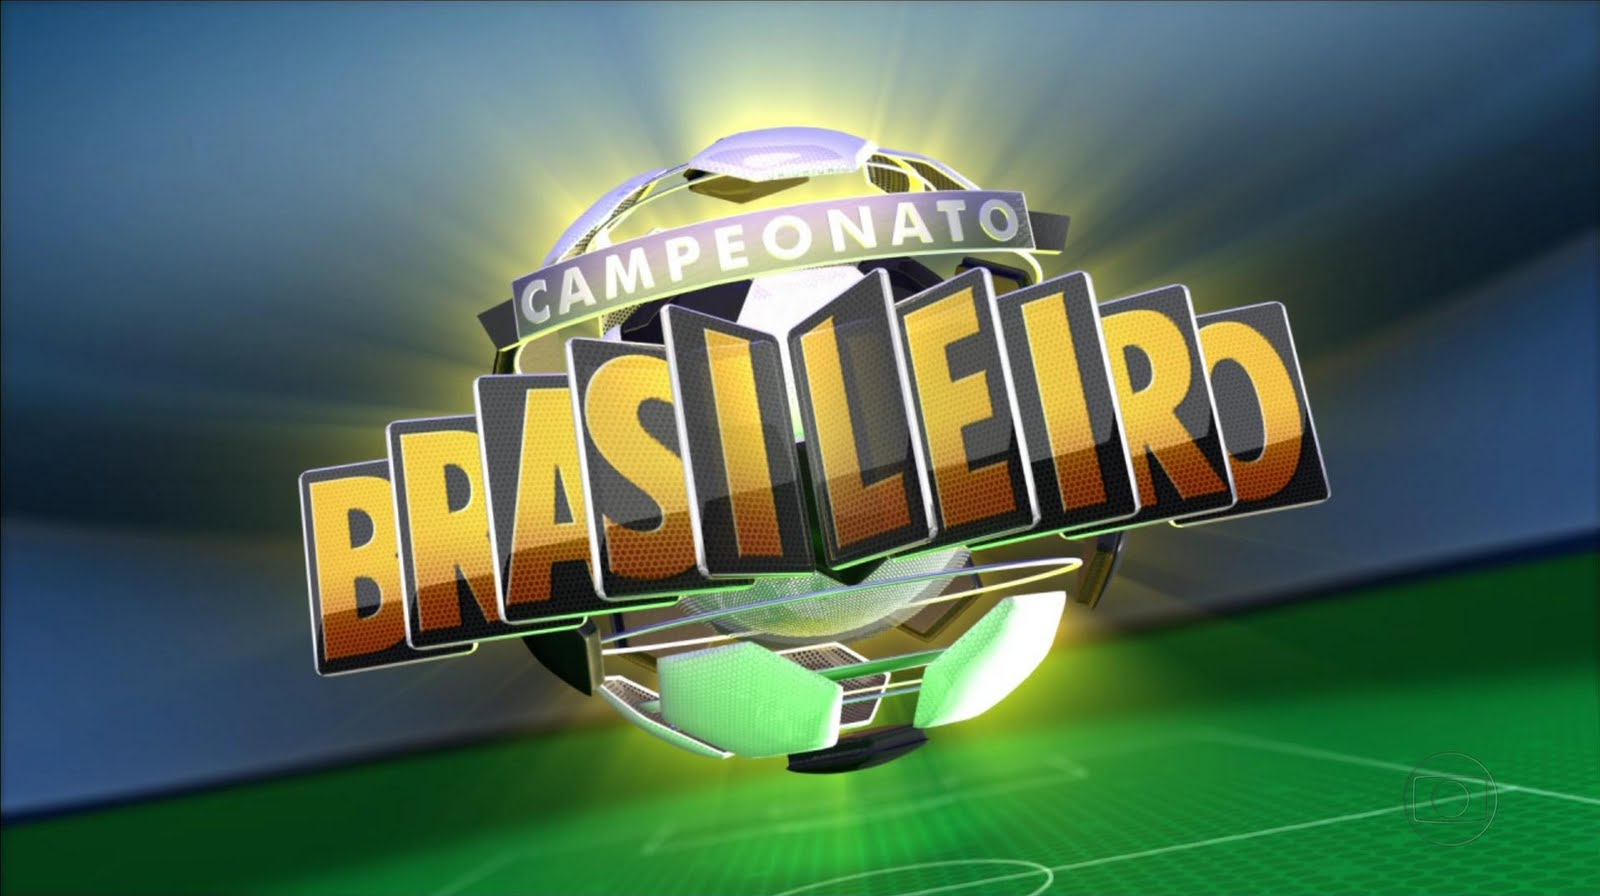 Resultado de imagem para campeonato brasileiro